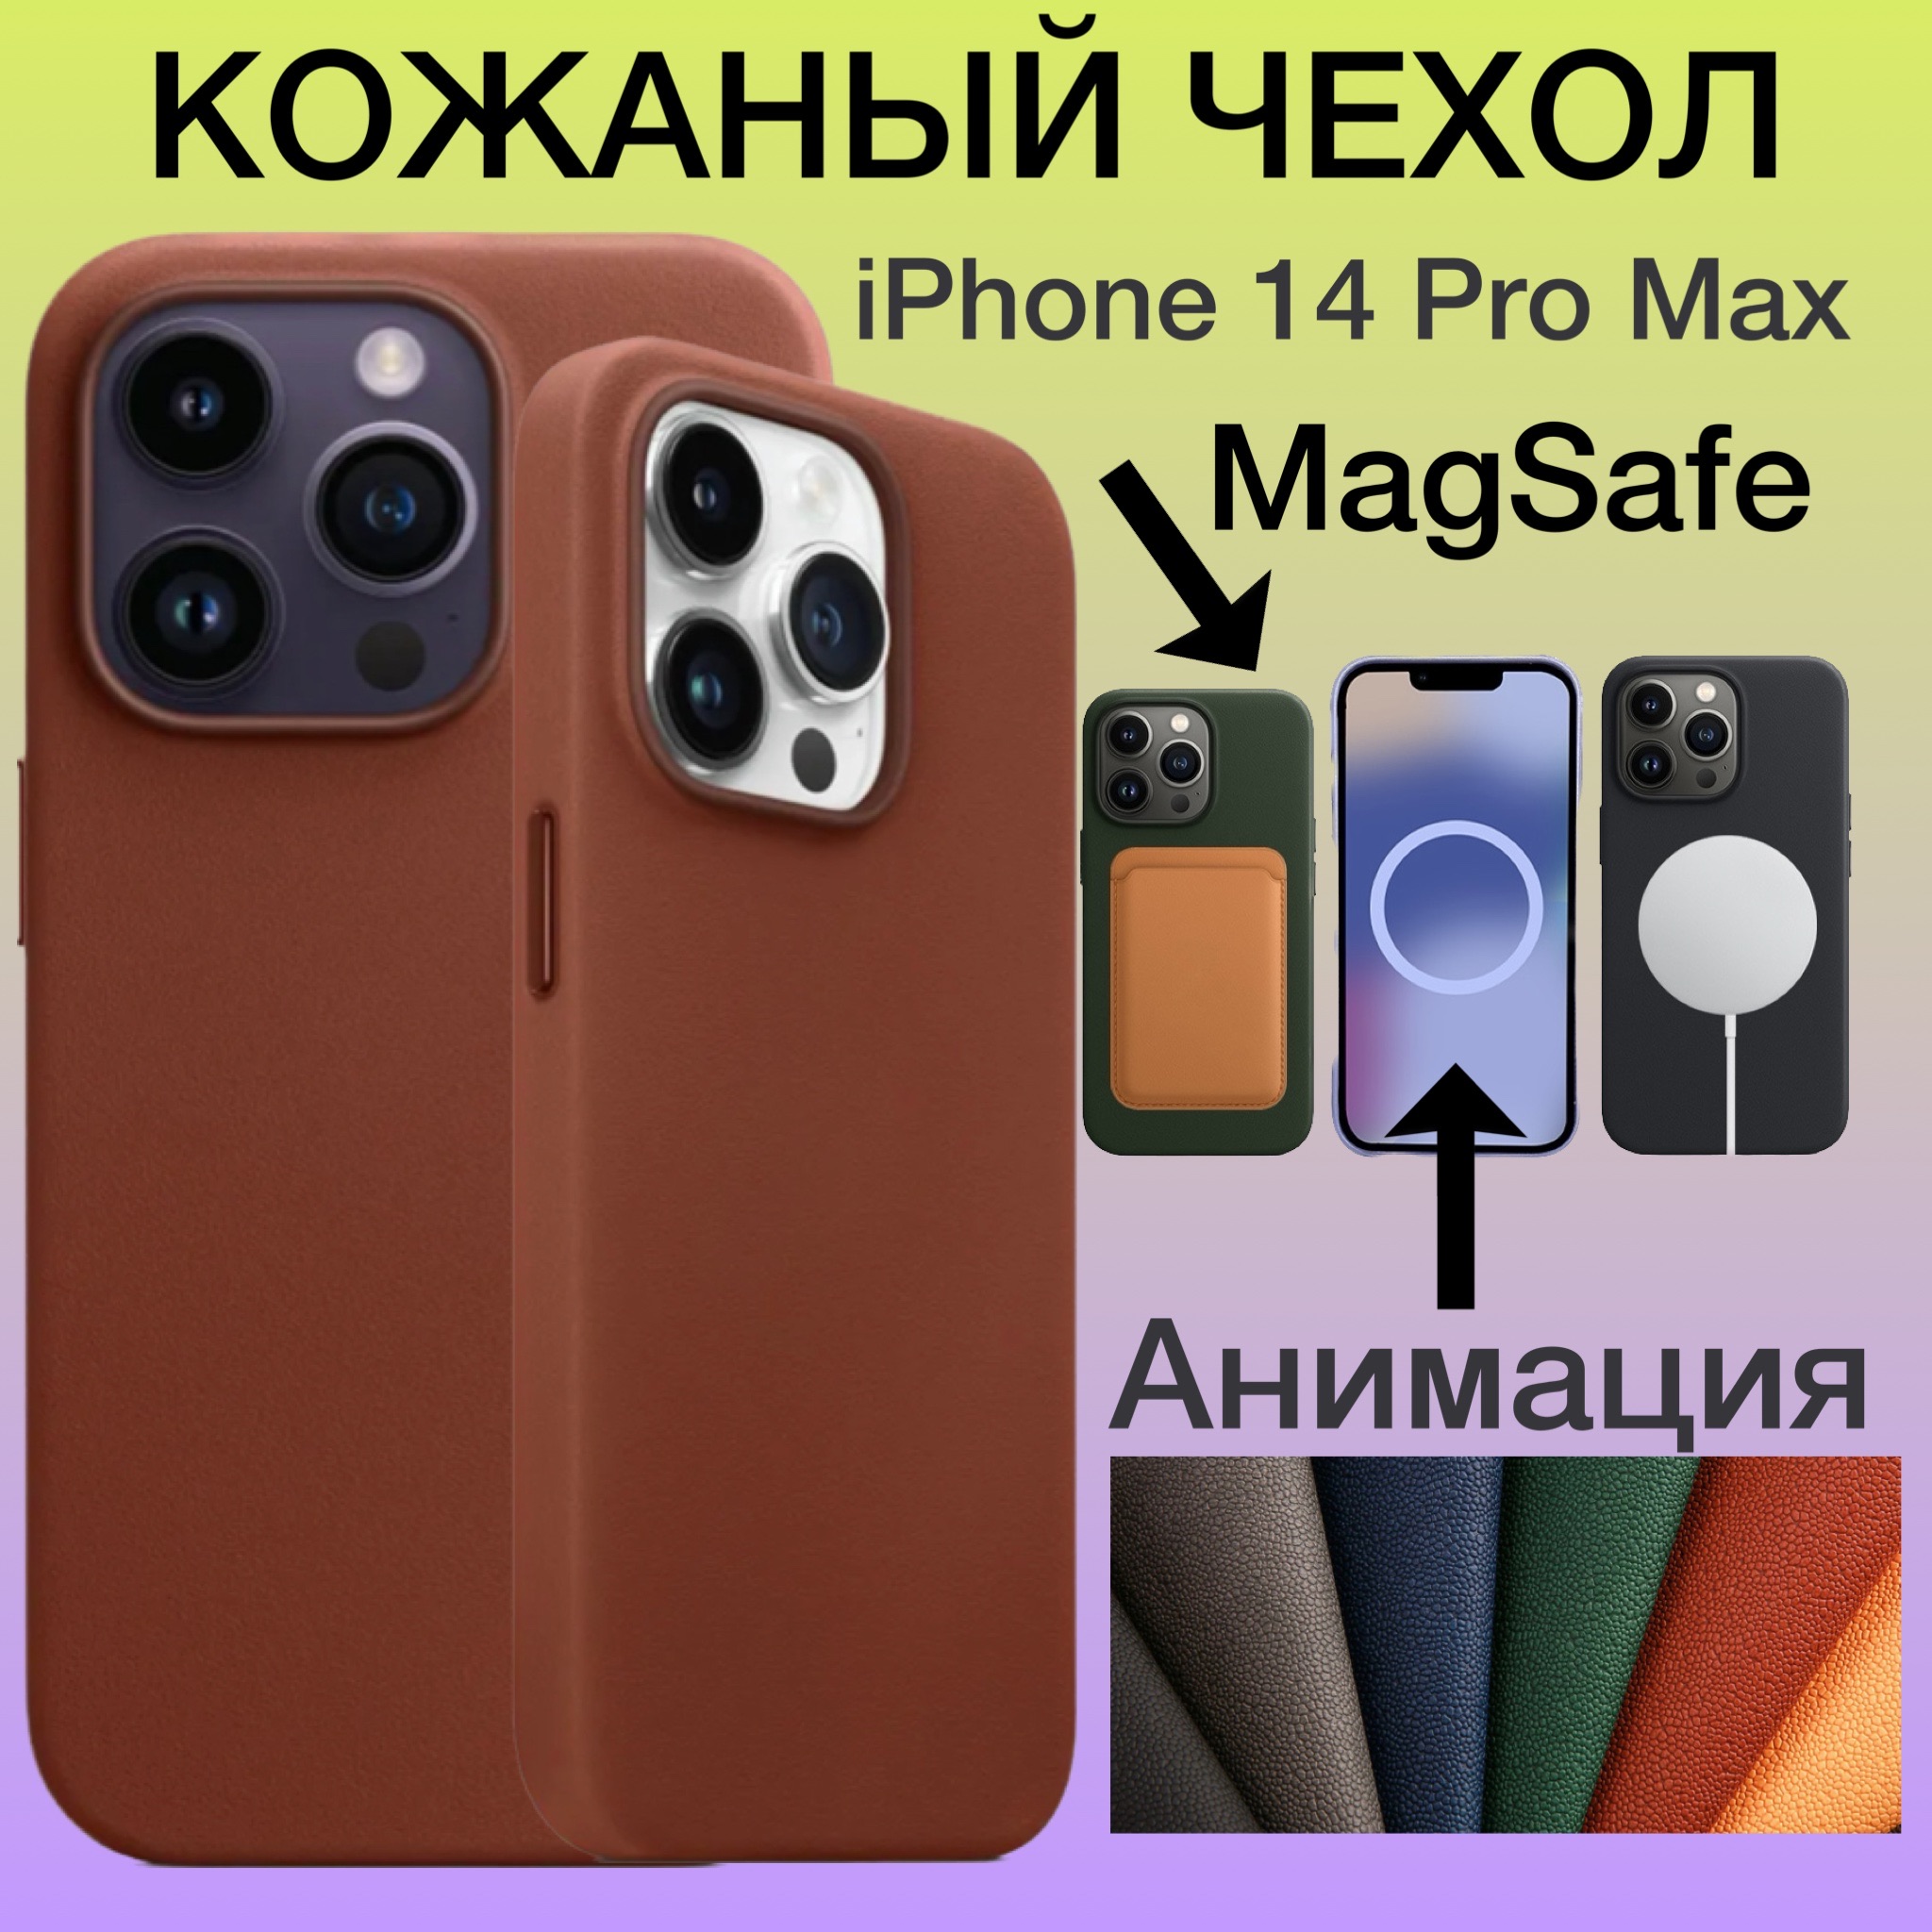 Кожаный чехол на iPhone 14 Pro Max MagSafe Анимацией на Айфон 14 Про Макс цвет коричневый